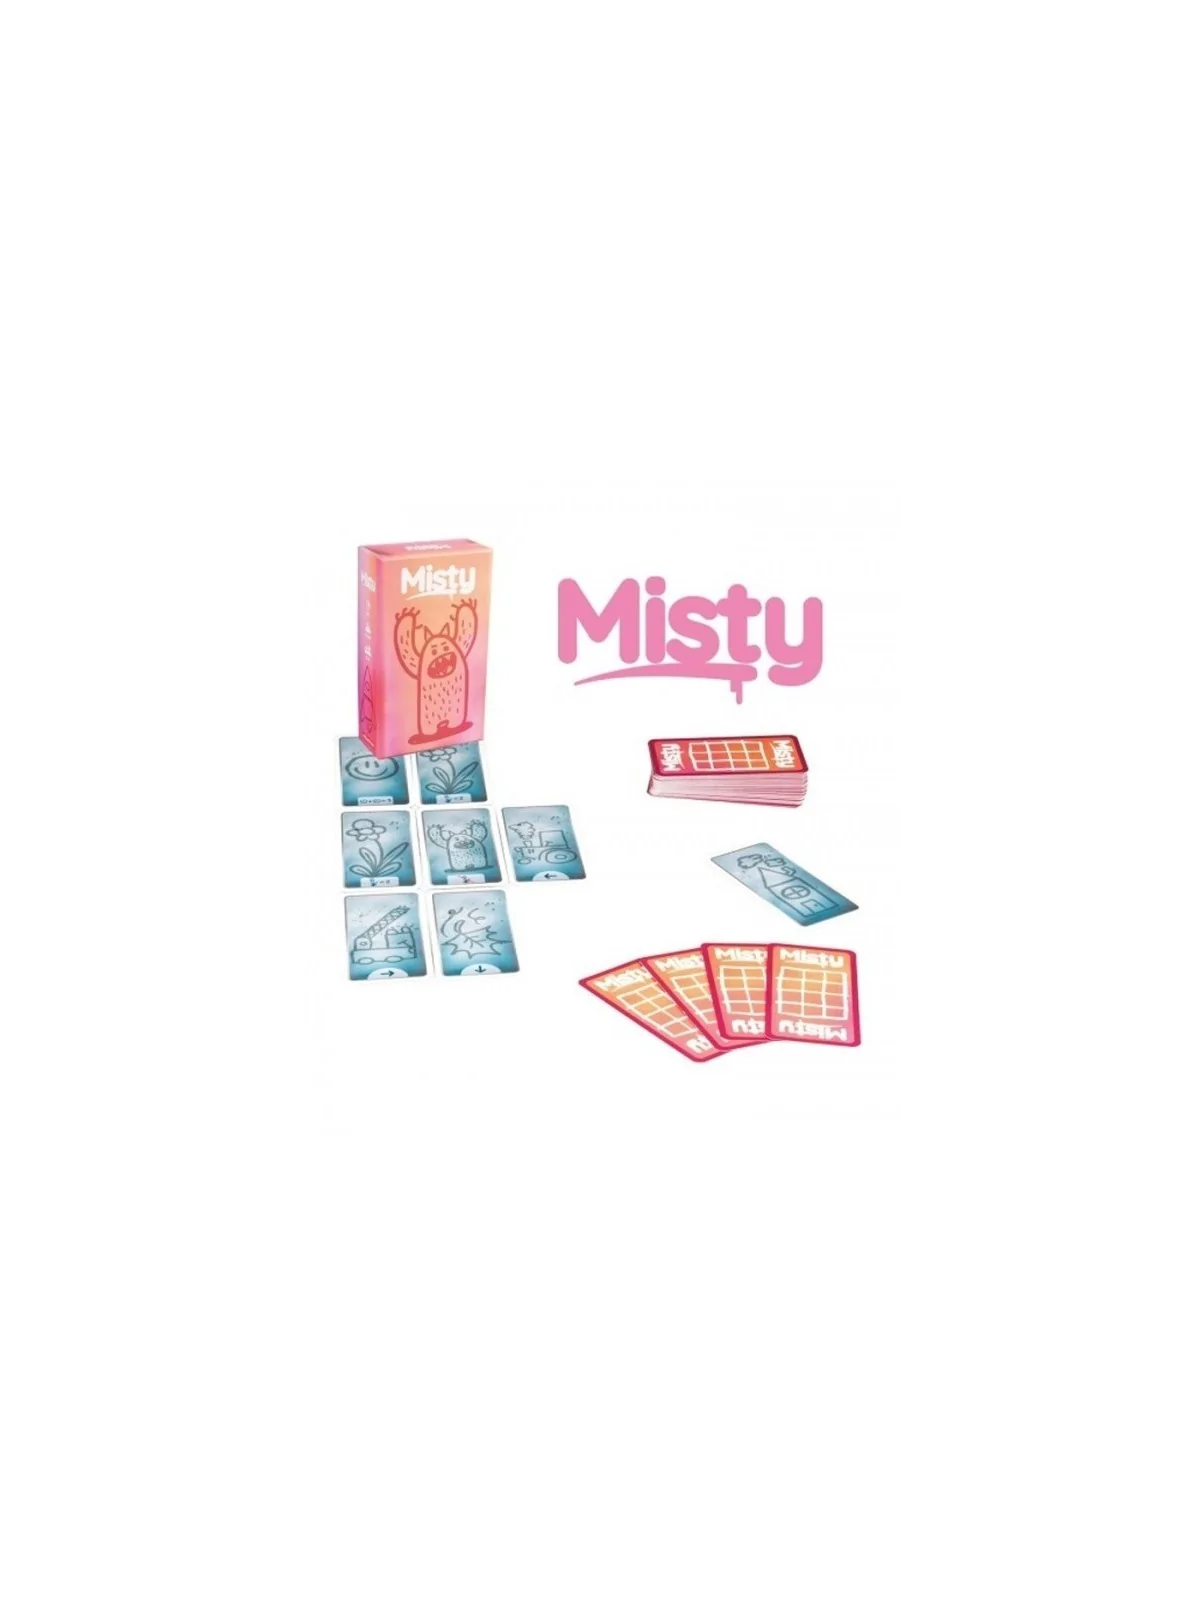 Comprar Misty barato al mejor precio 11,65 € de TCG Factory